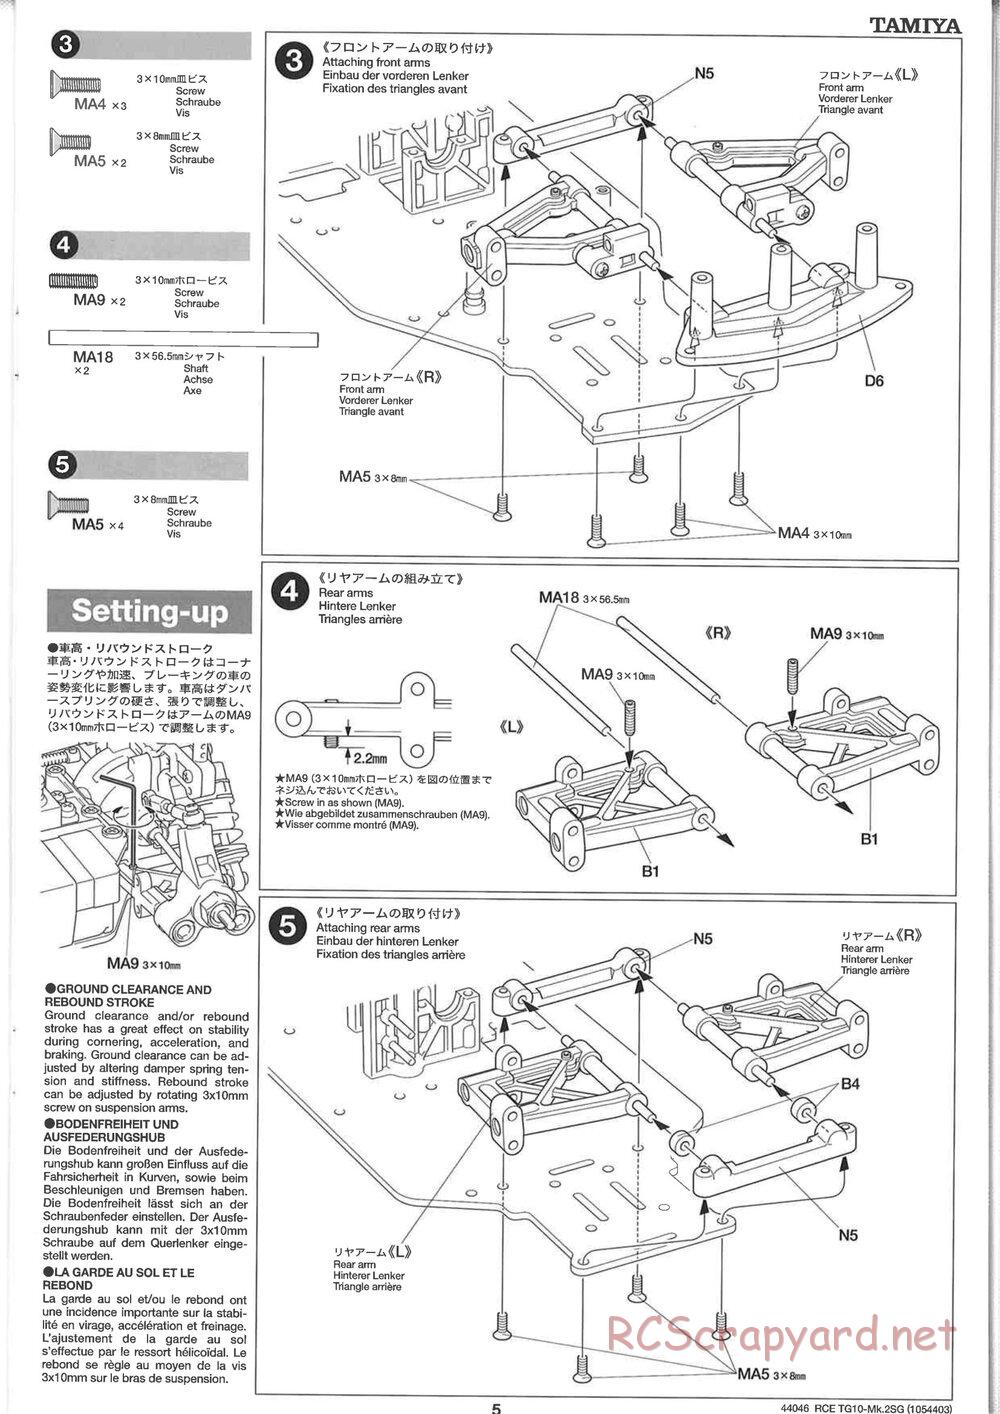 Tamiya - TG10 Mk.2SG Chassis - Manual - Page 5